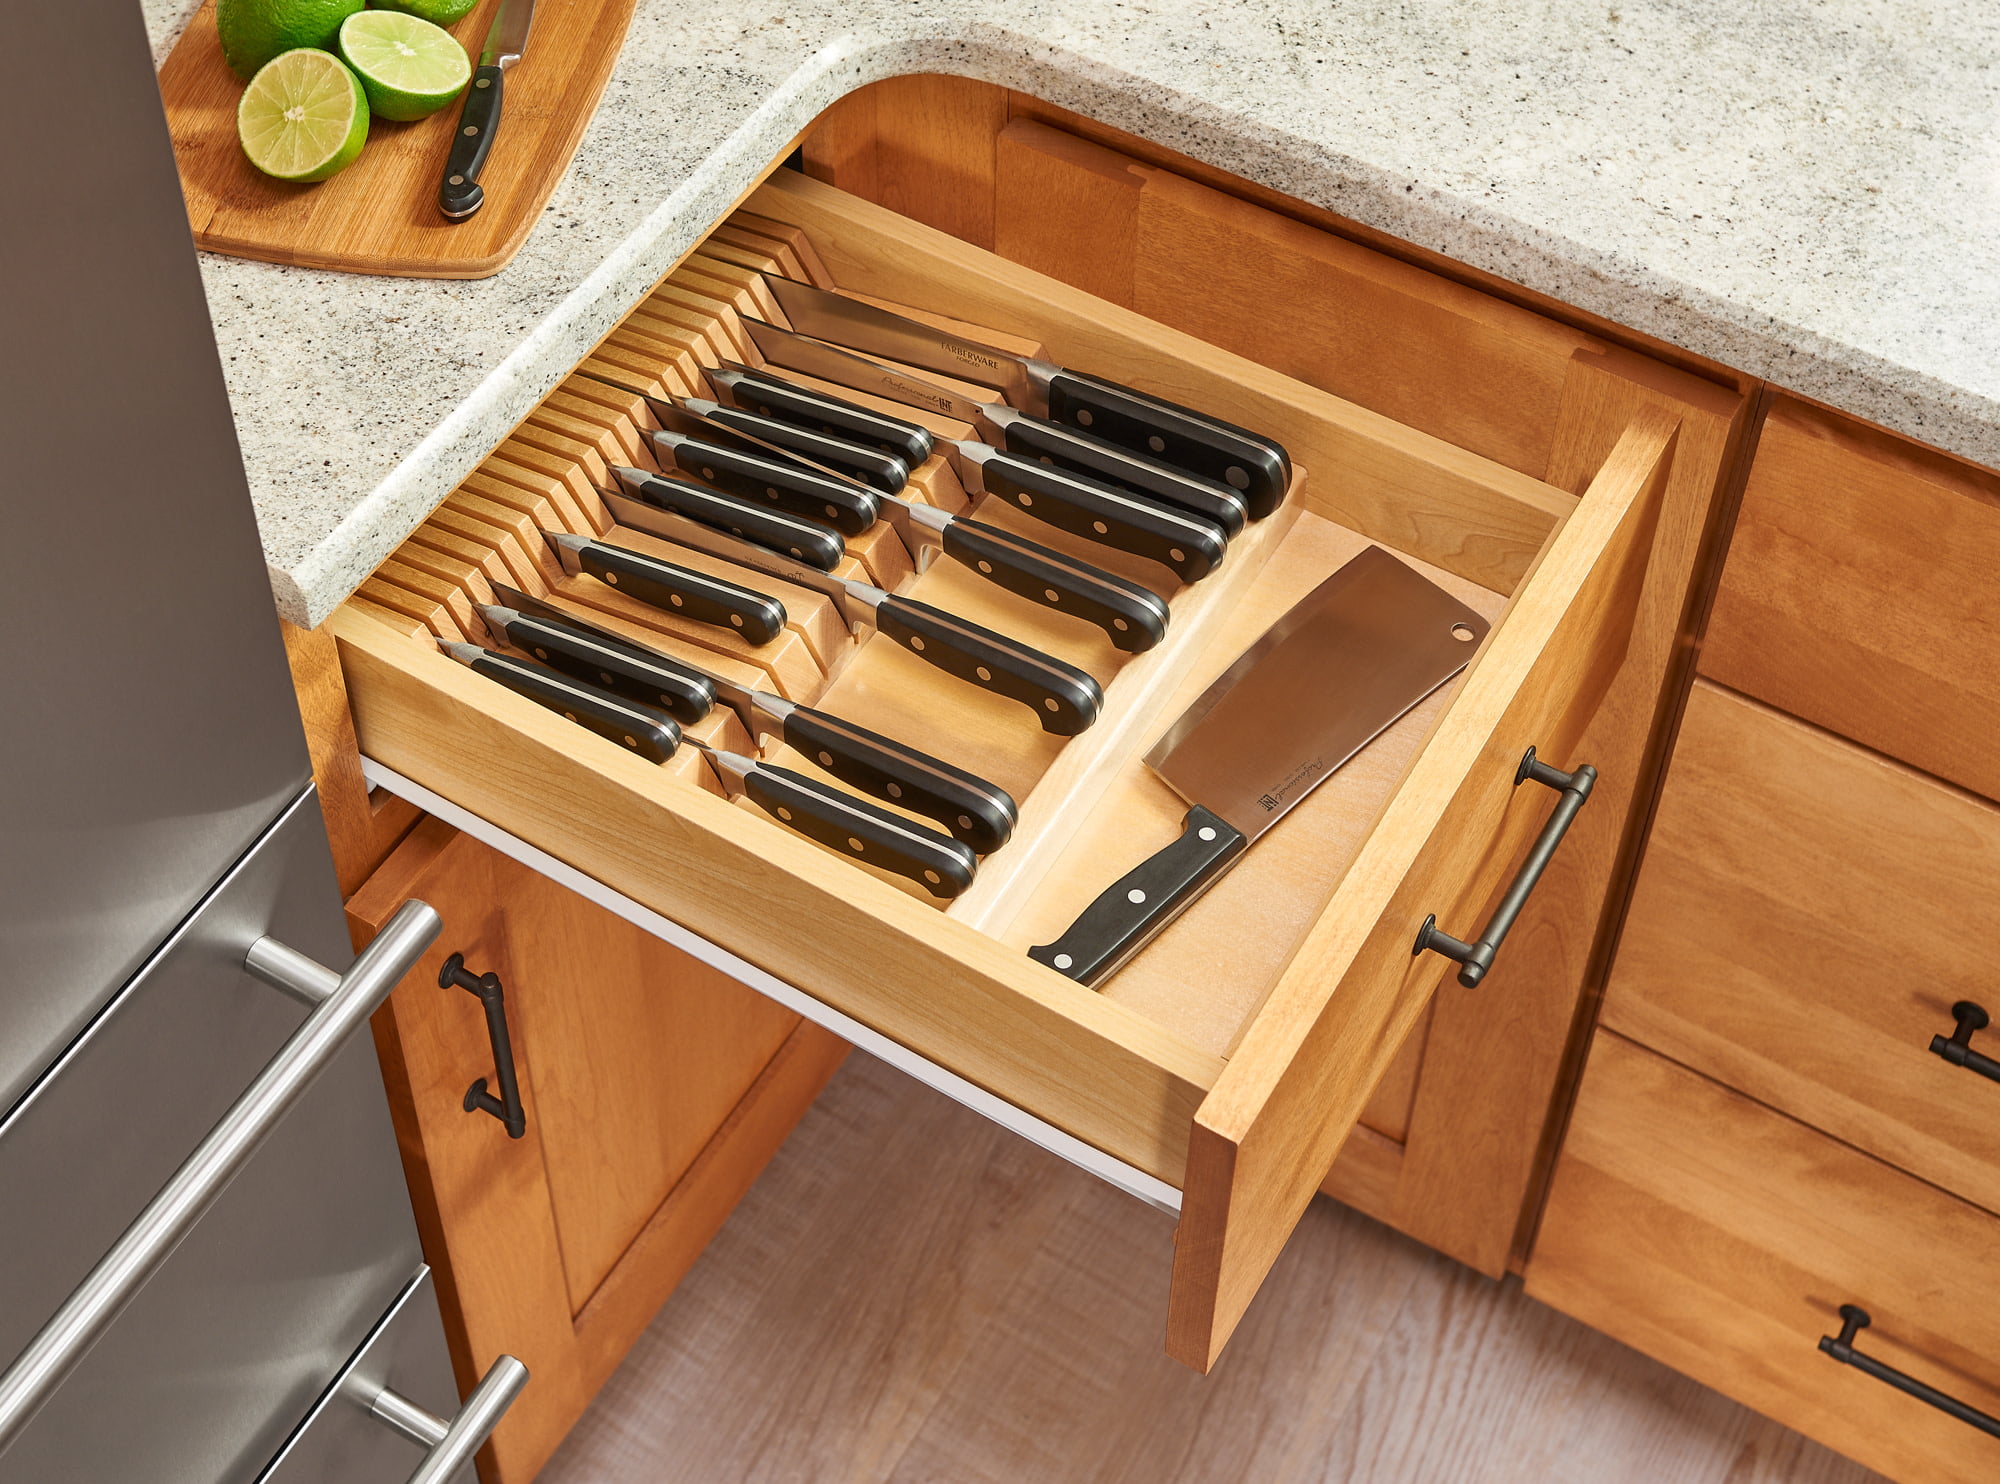 knife drawer organizer target